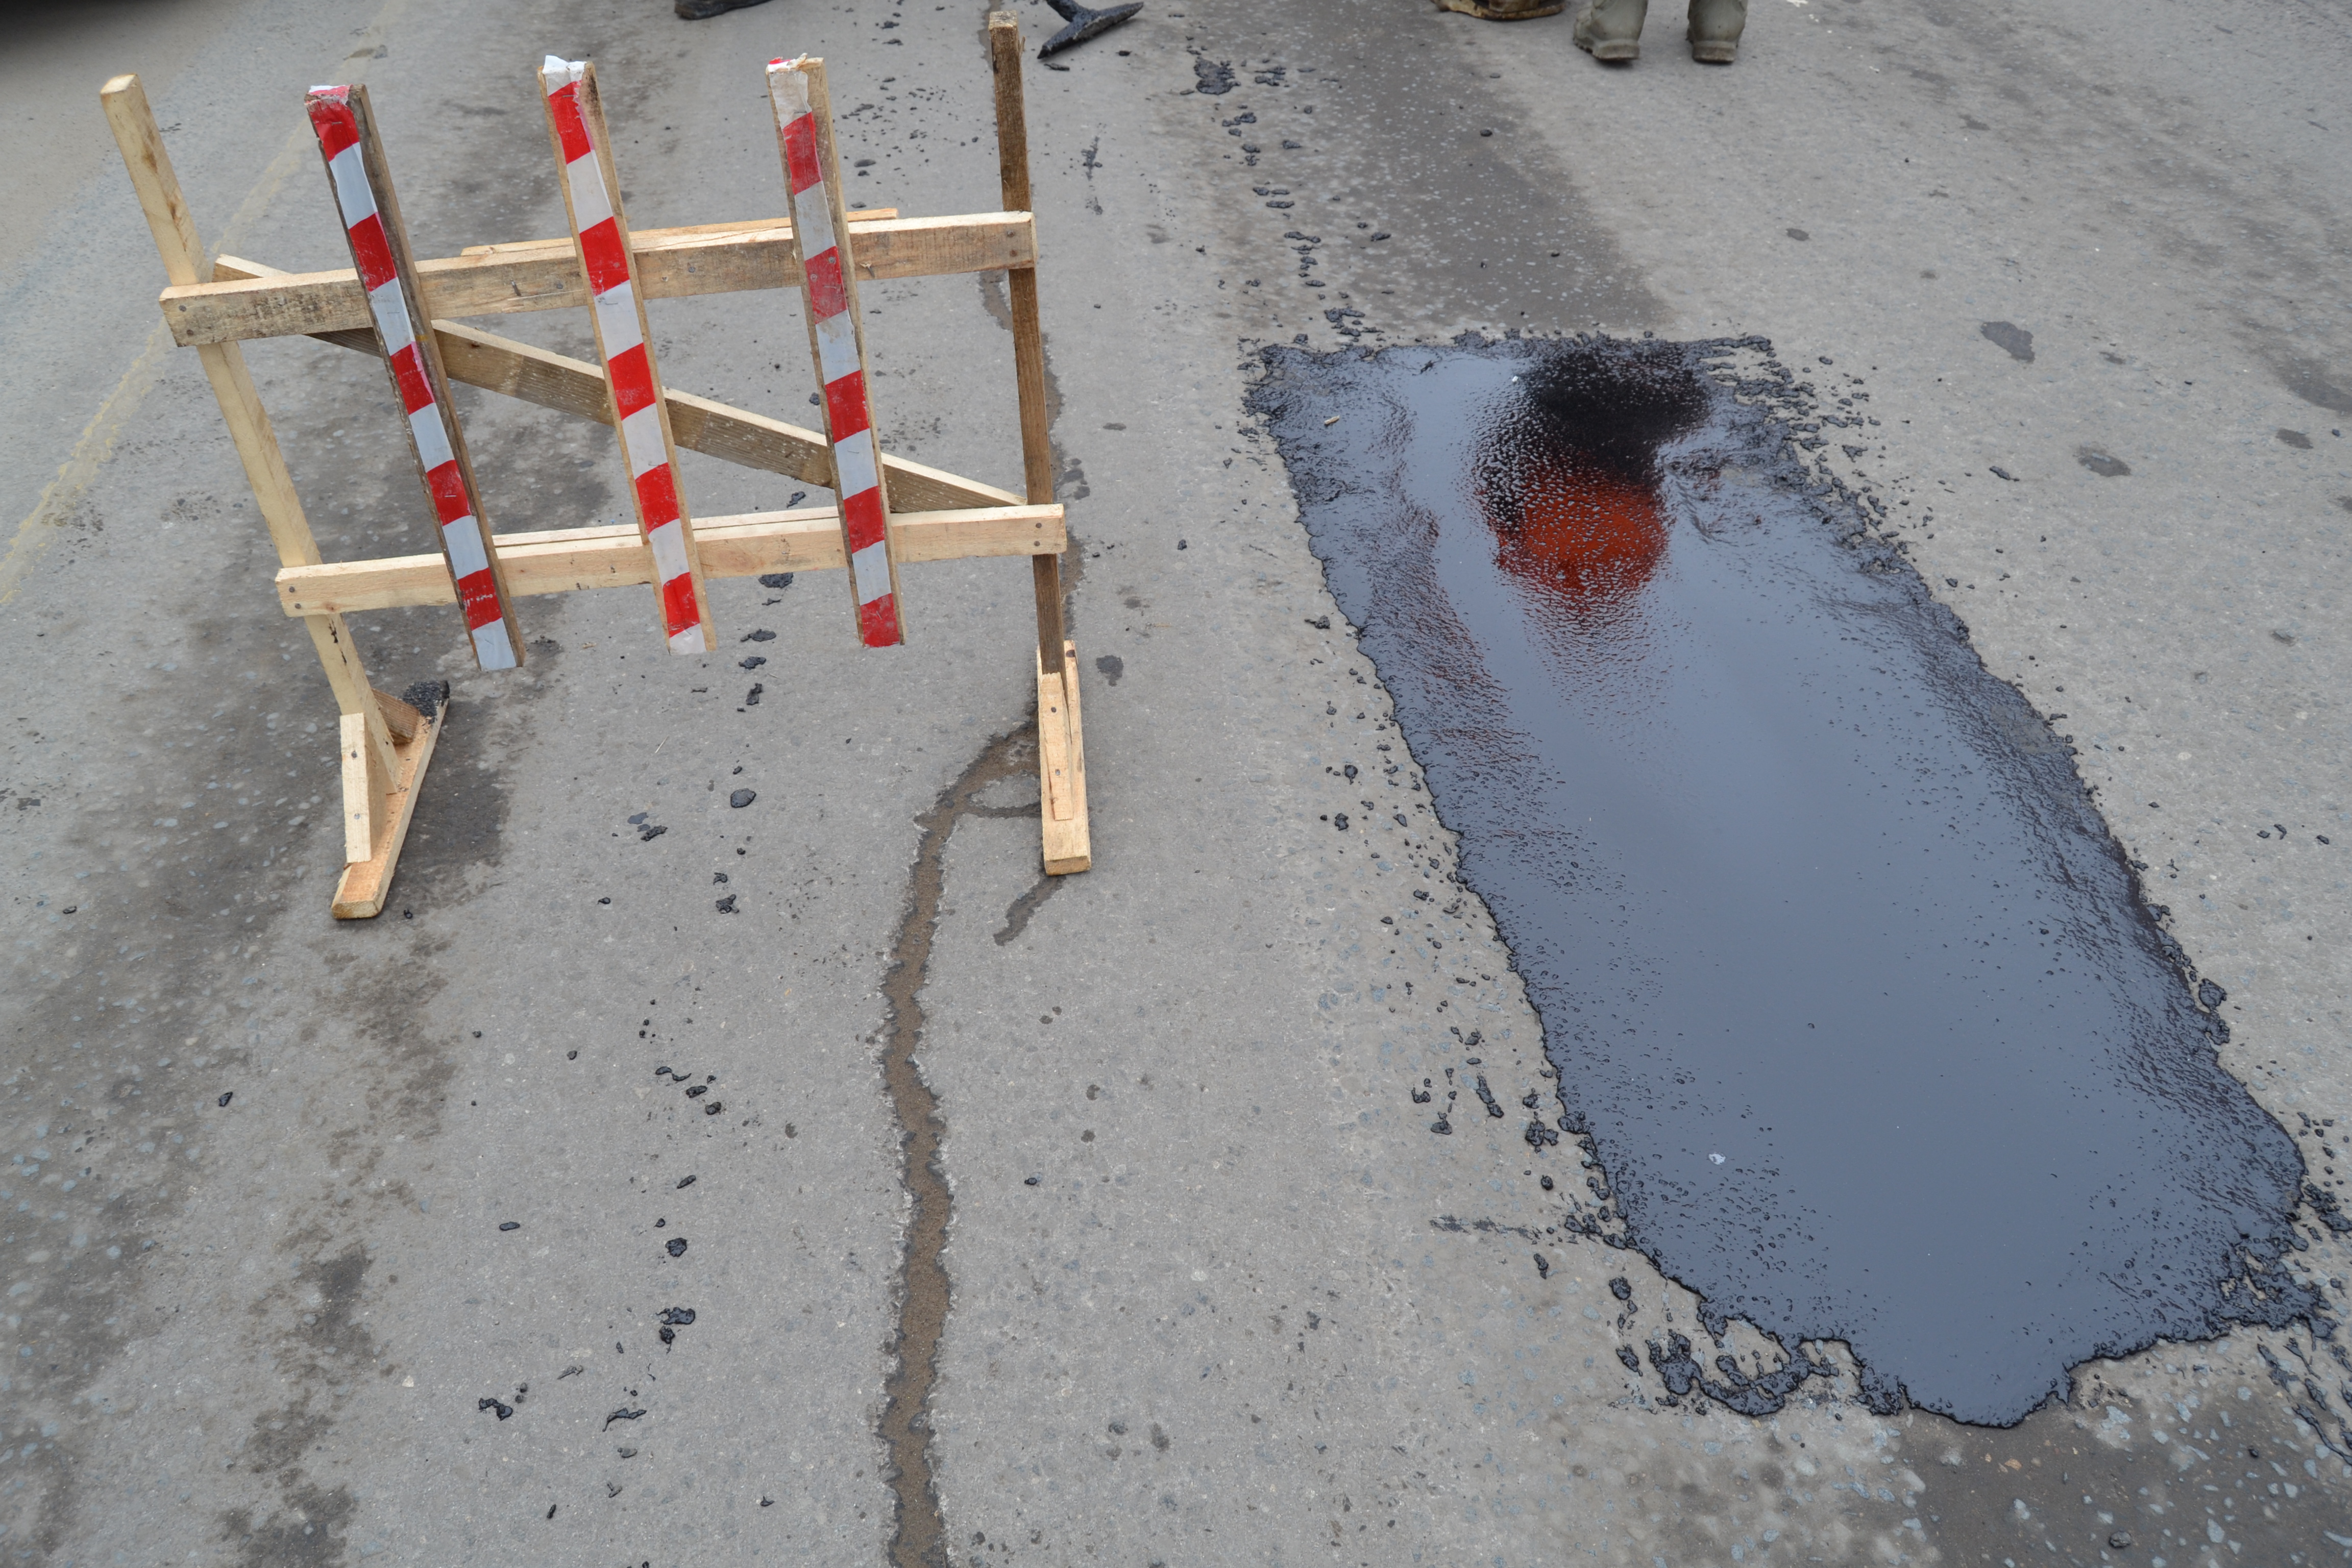 Ямочный ремонт дорог запланирован на улицах 4-я Сосневская и Окуловой.